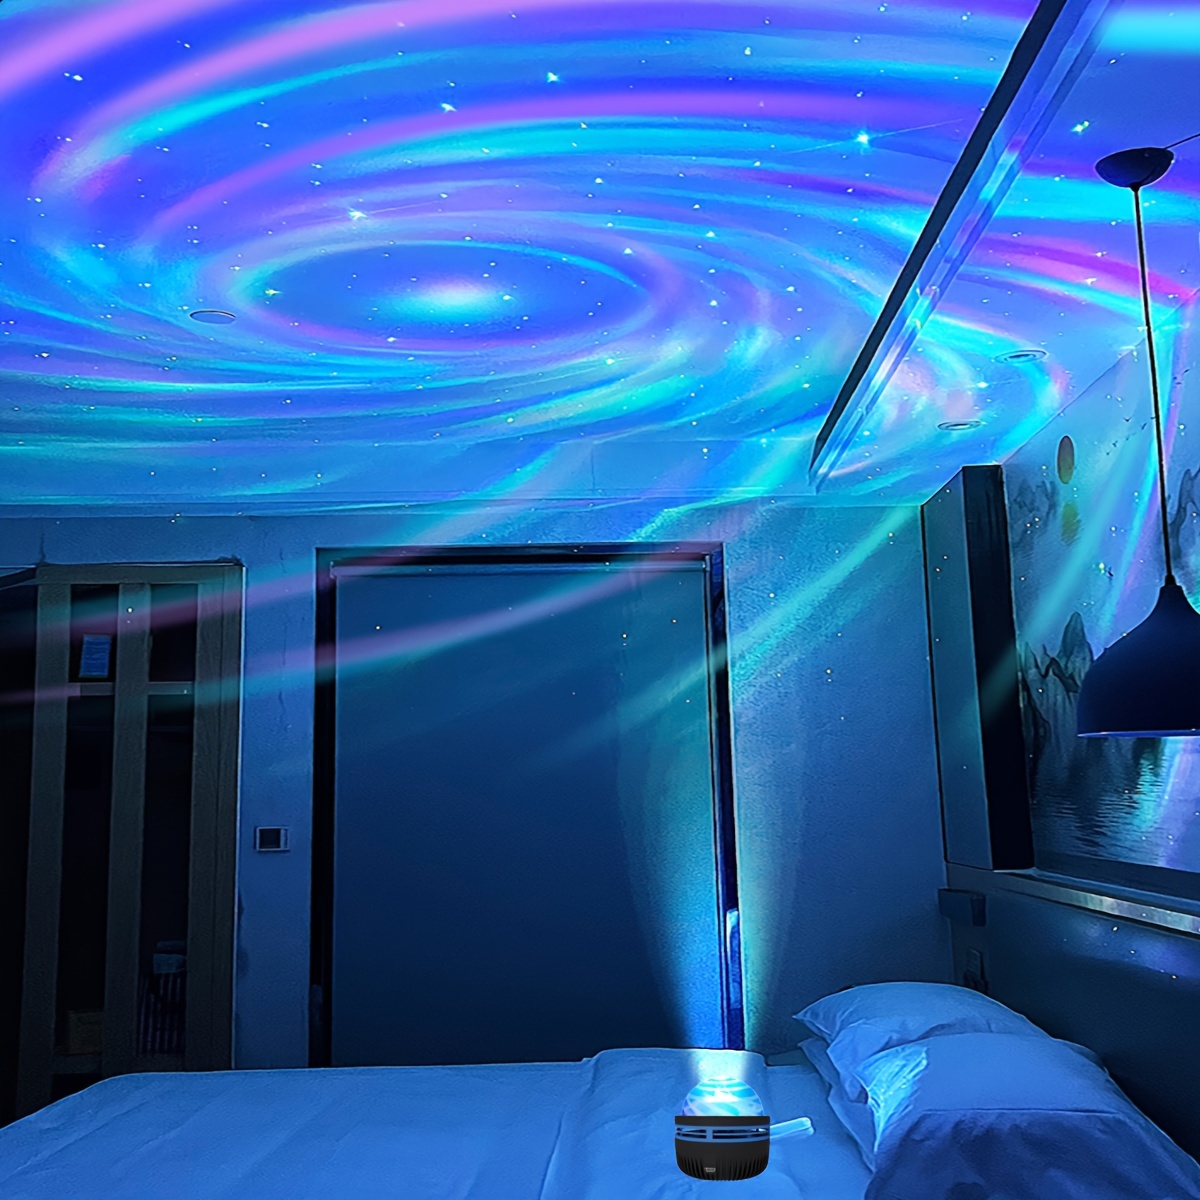 Bioguia - Con este proyector tendrás toda una galaxia en tu habitación. ¿Te  gustaría tenerlo?